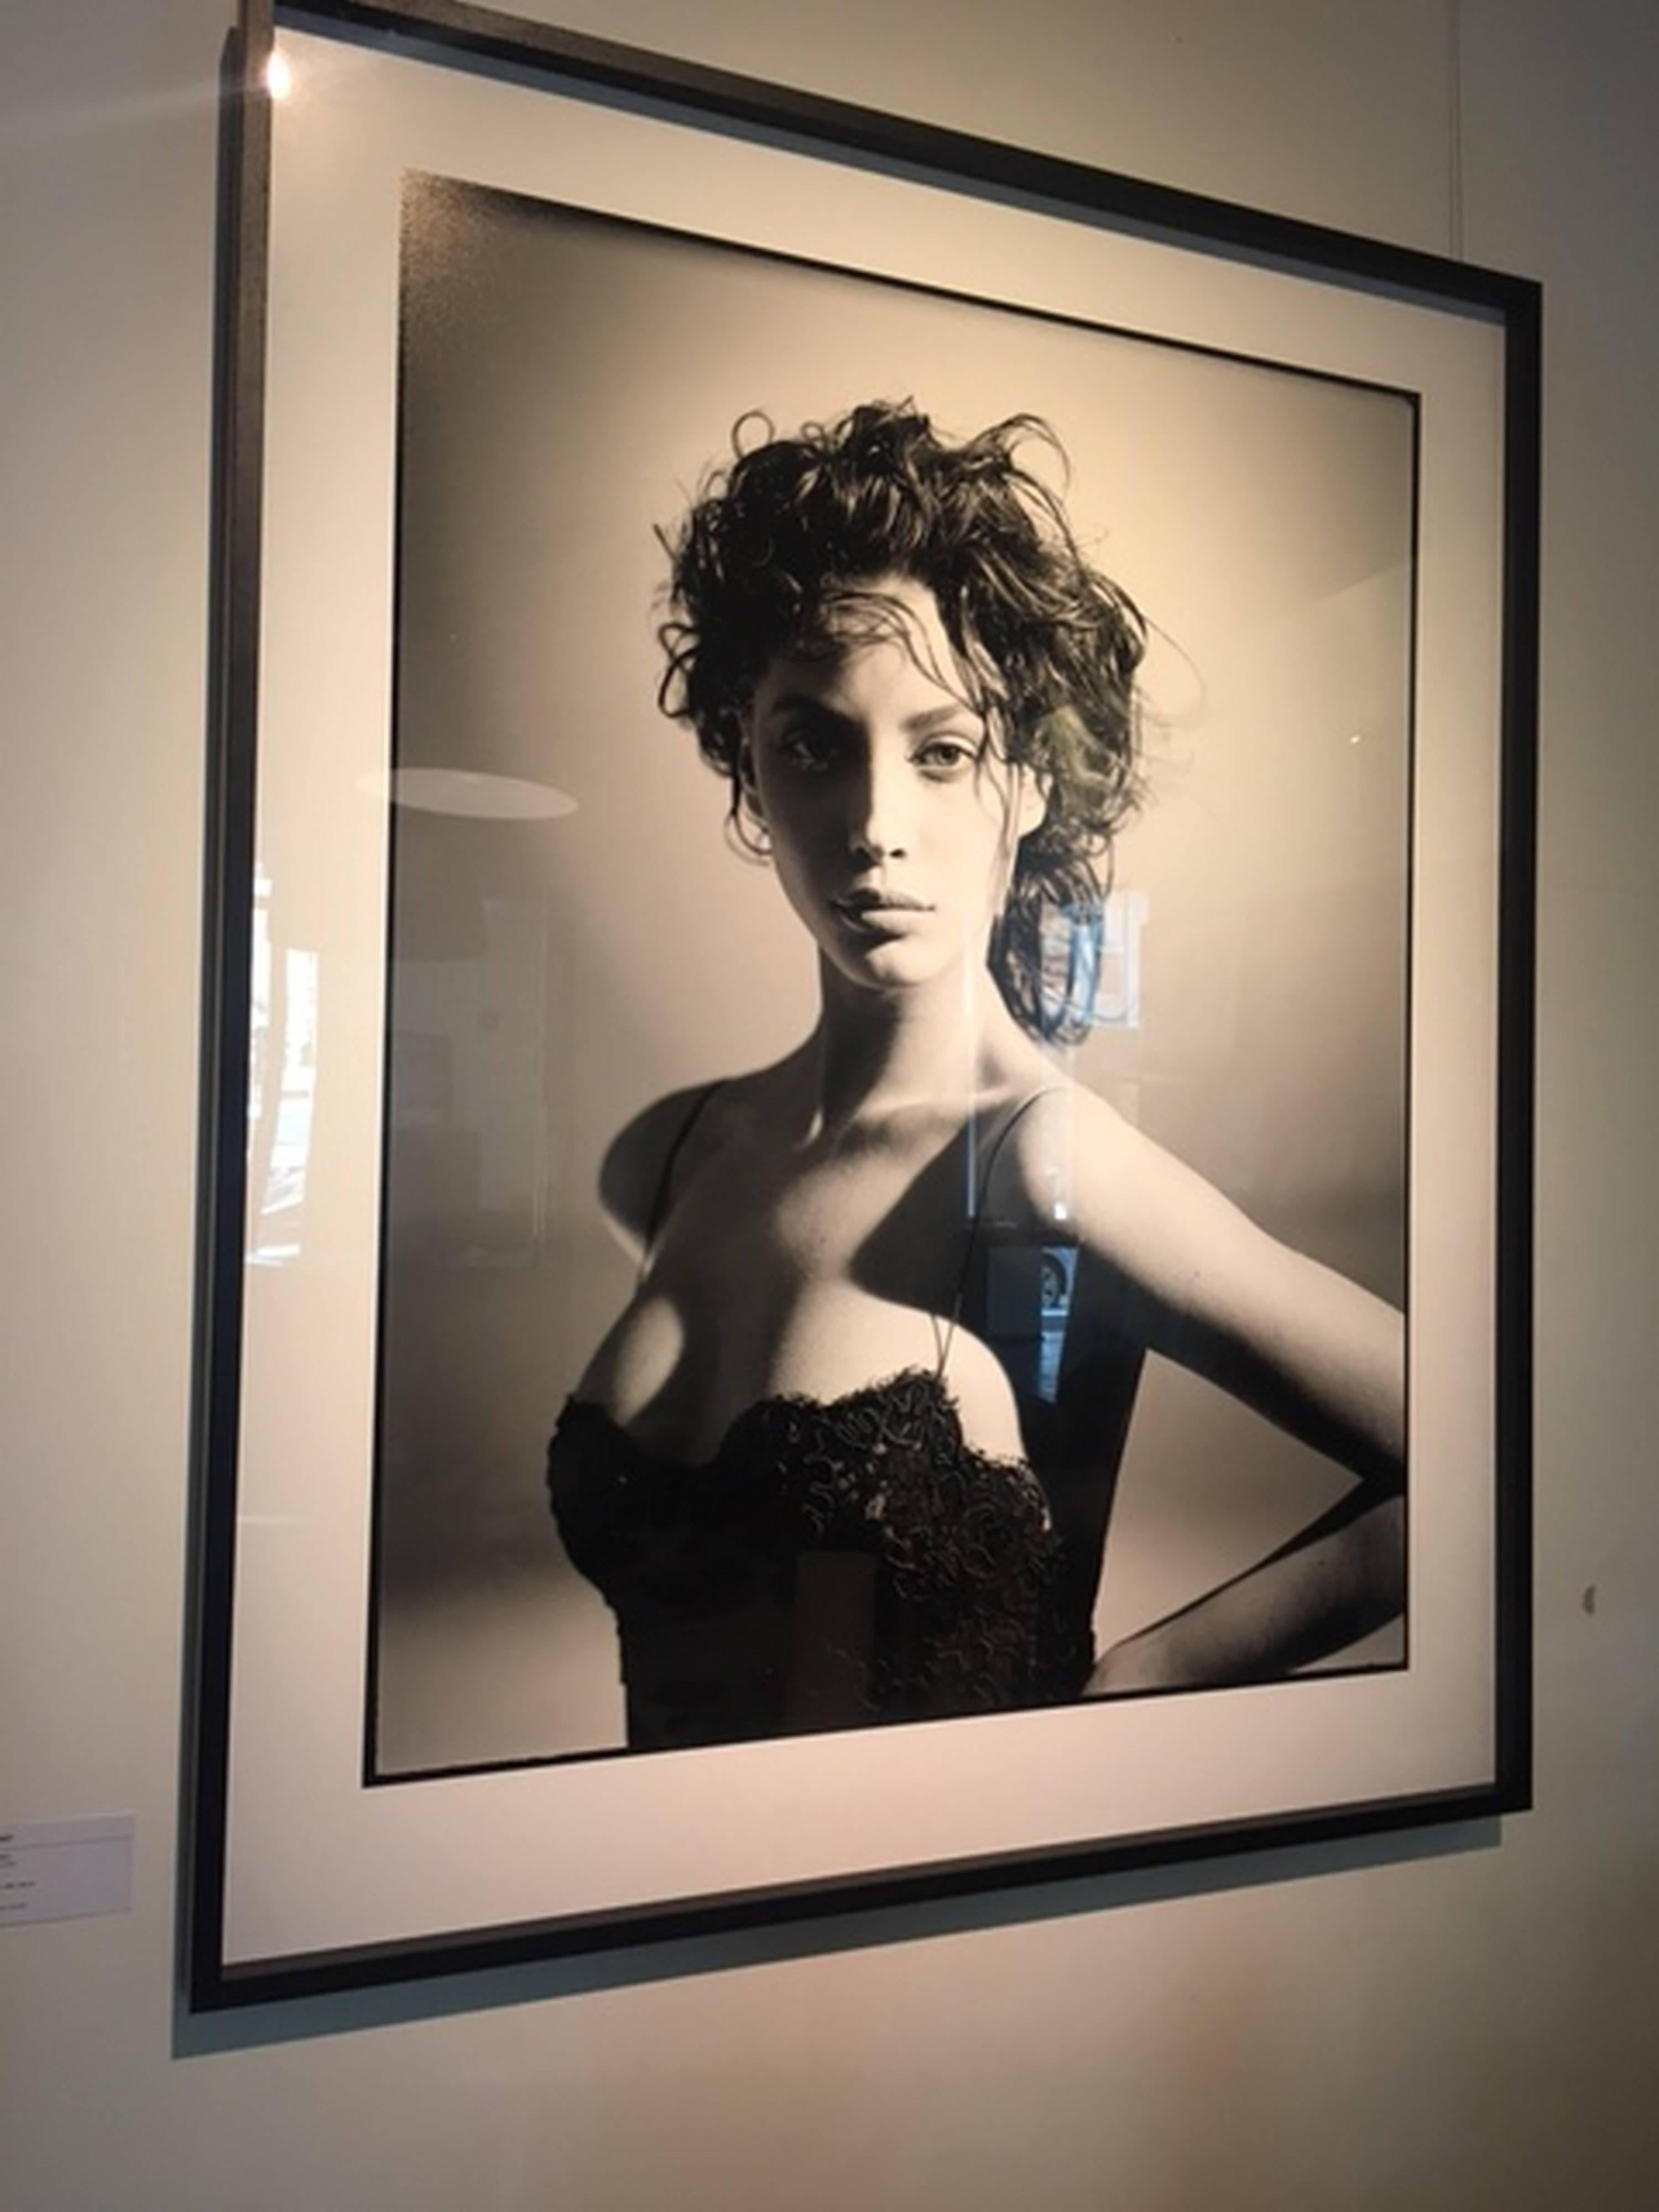 Christy Turlington - portrait b&w en dentelle noire, photographie d'art, 1987 - Photograph de Arthur Elgort